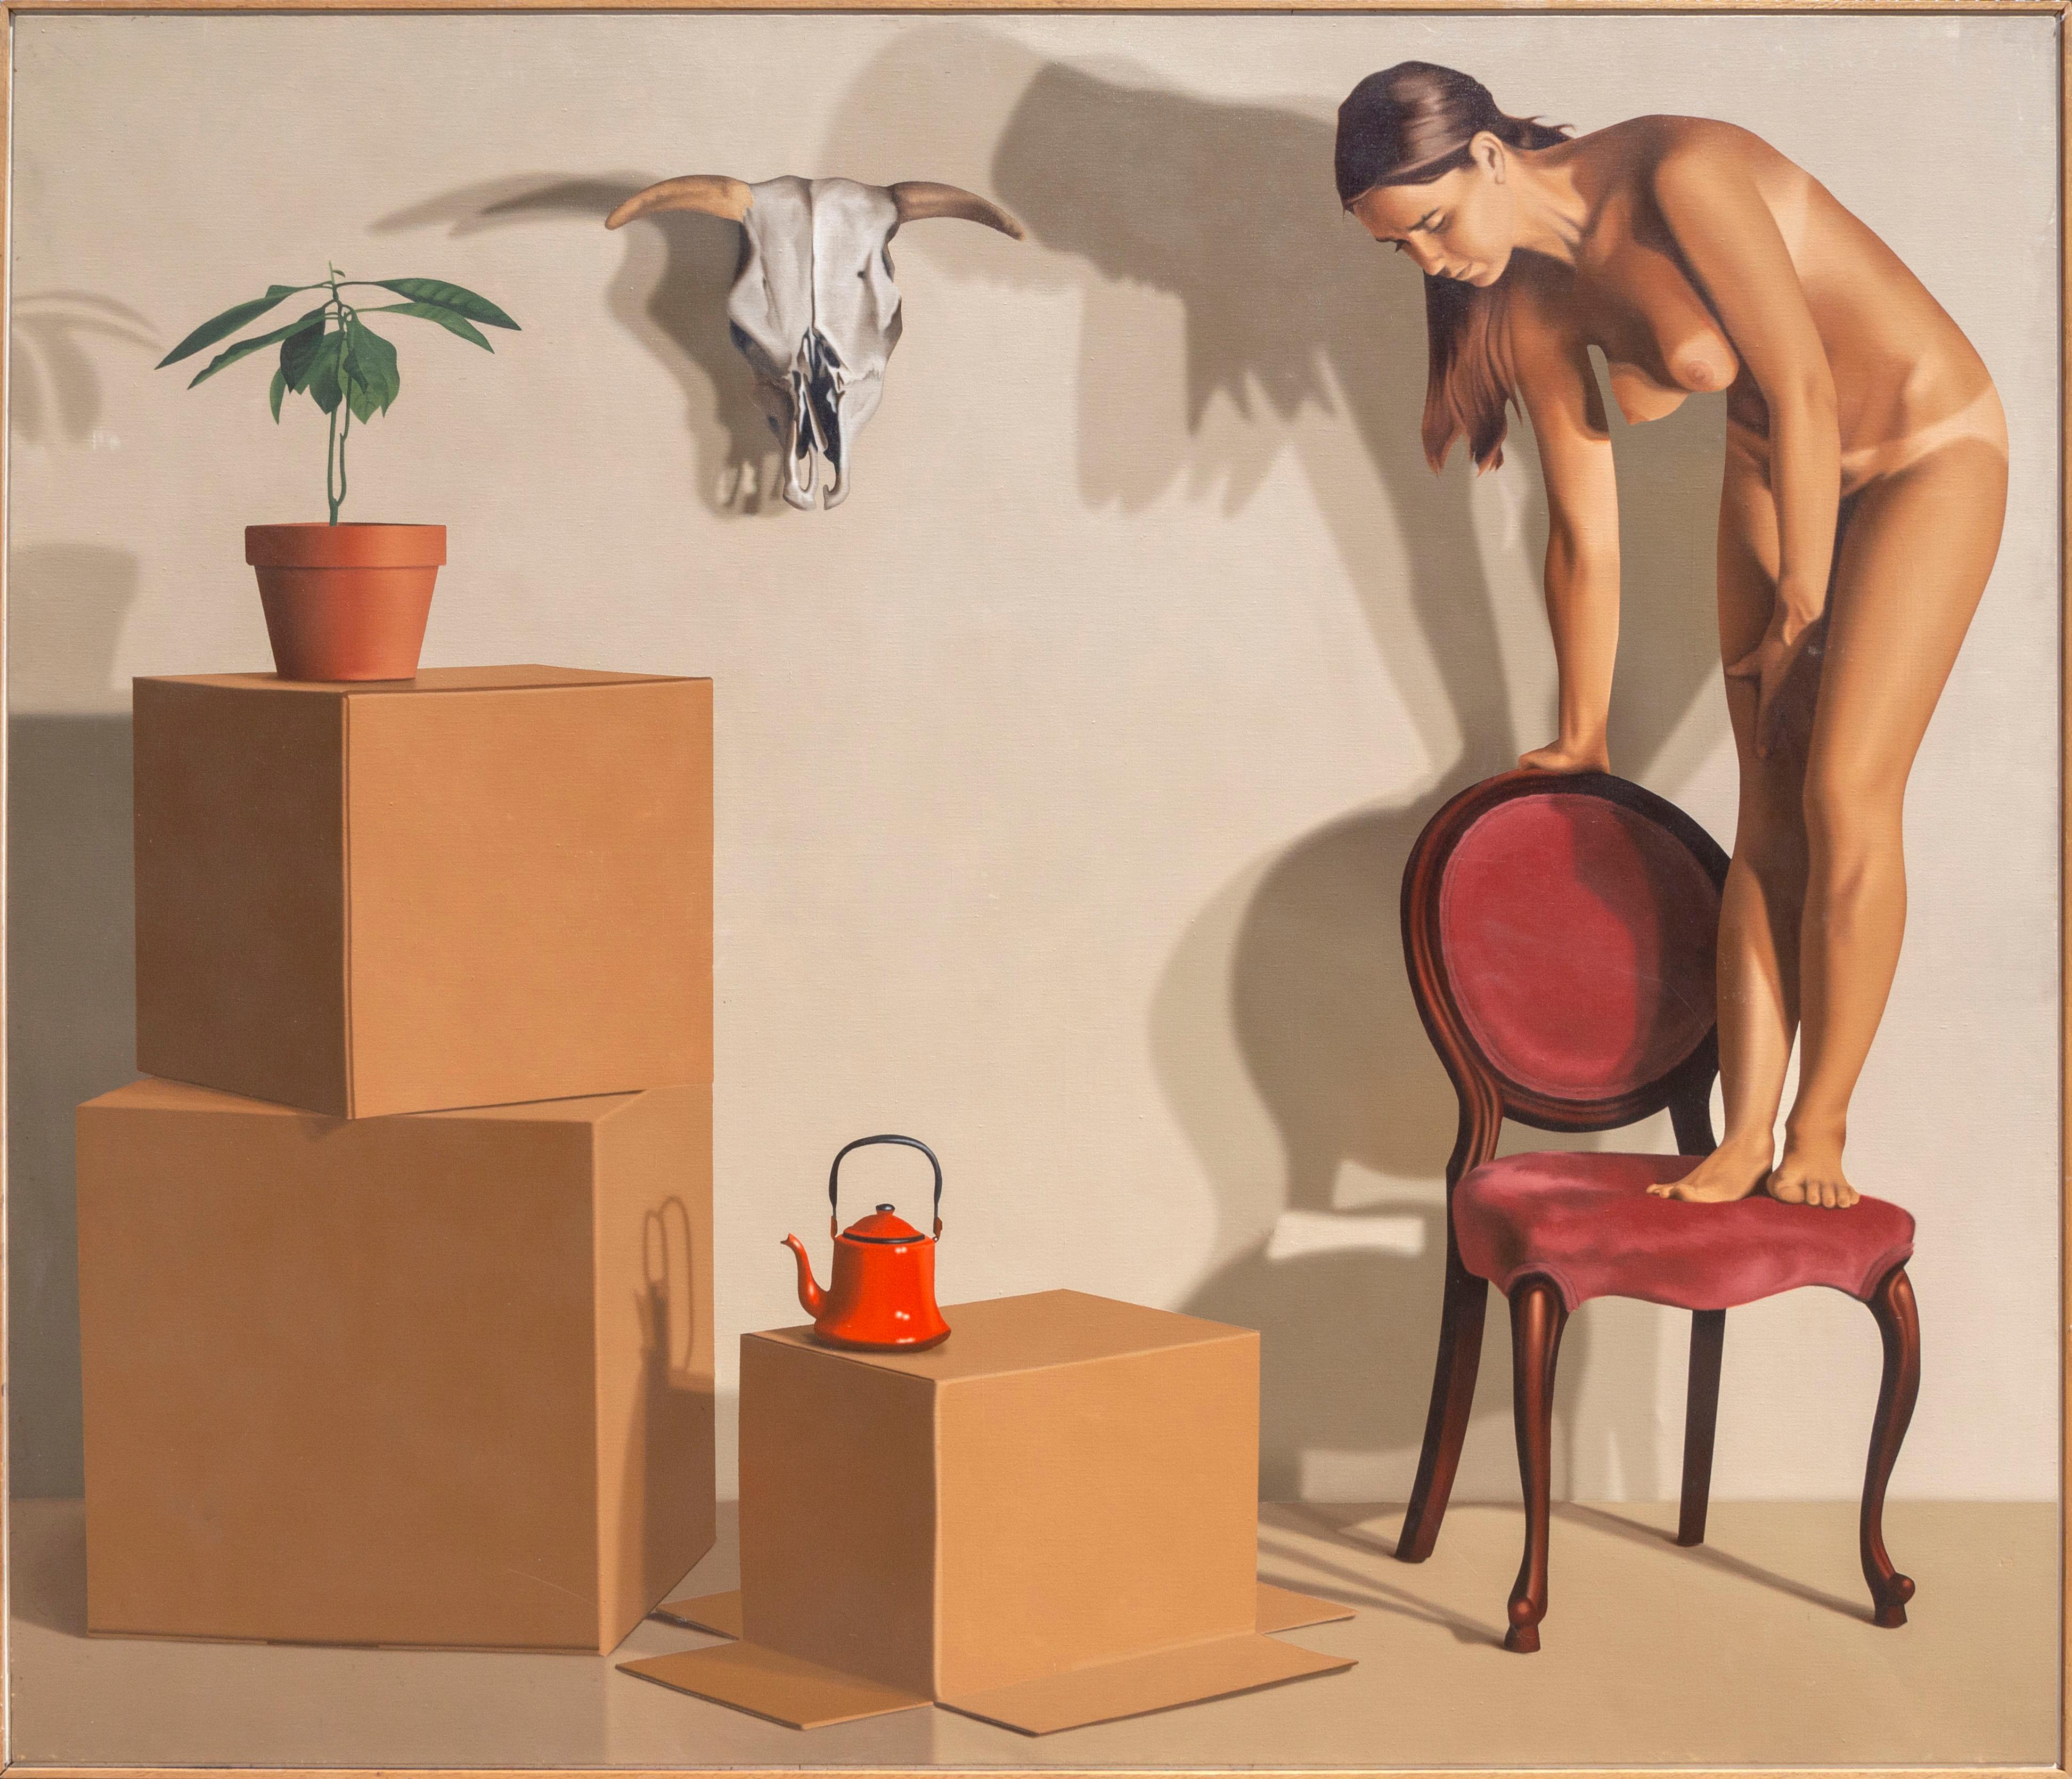 Artiste : Bill Wiman, américain (1940 - )
Titre : Girl in a Chair
Année : 1978
Moyen : Huile sur toile, signée
Taille : 82 x 83,5 in. (182,88 x 212,09 cm)
Cadre : 83 x 84.5 pouces